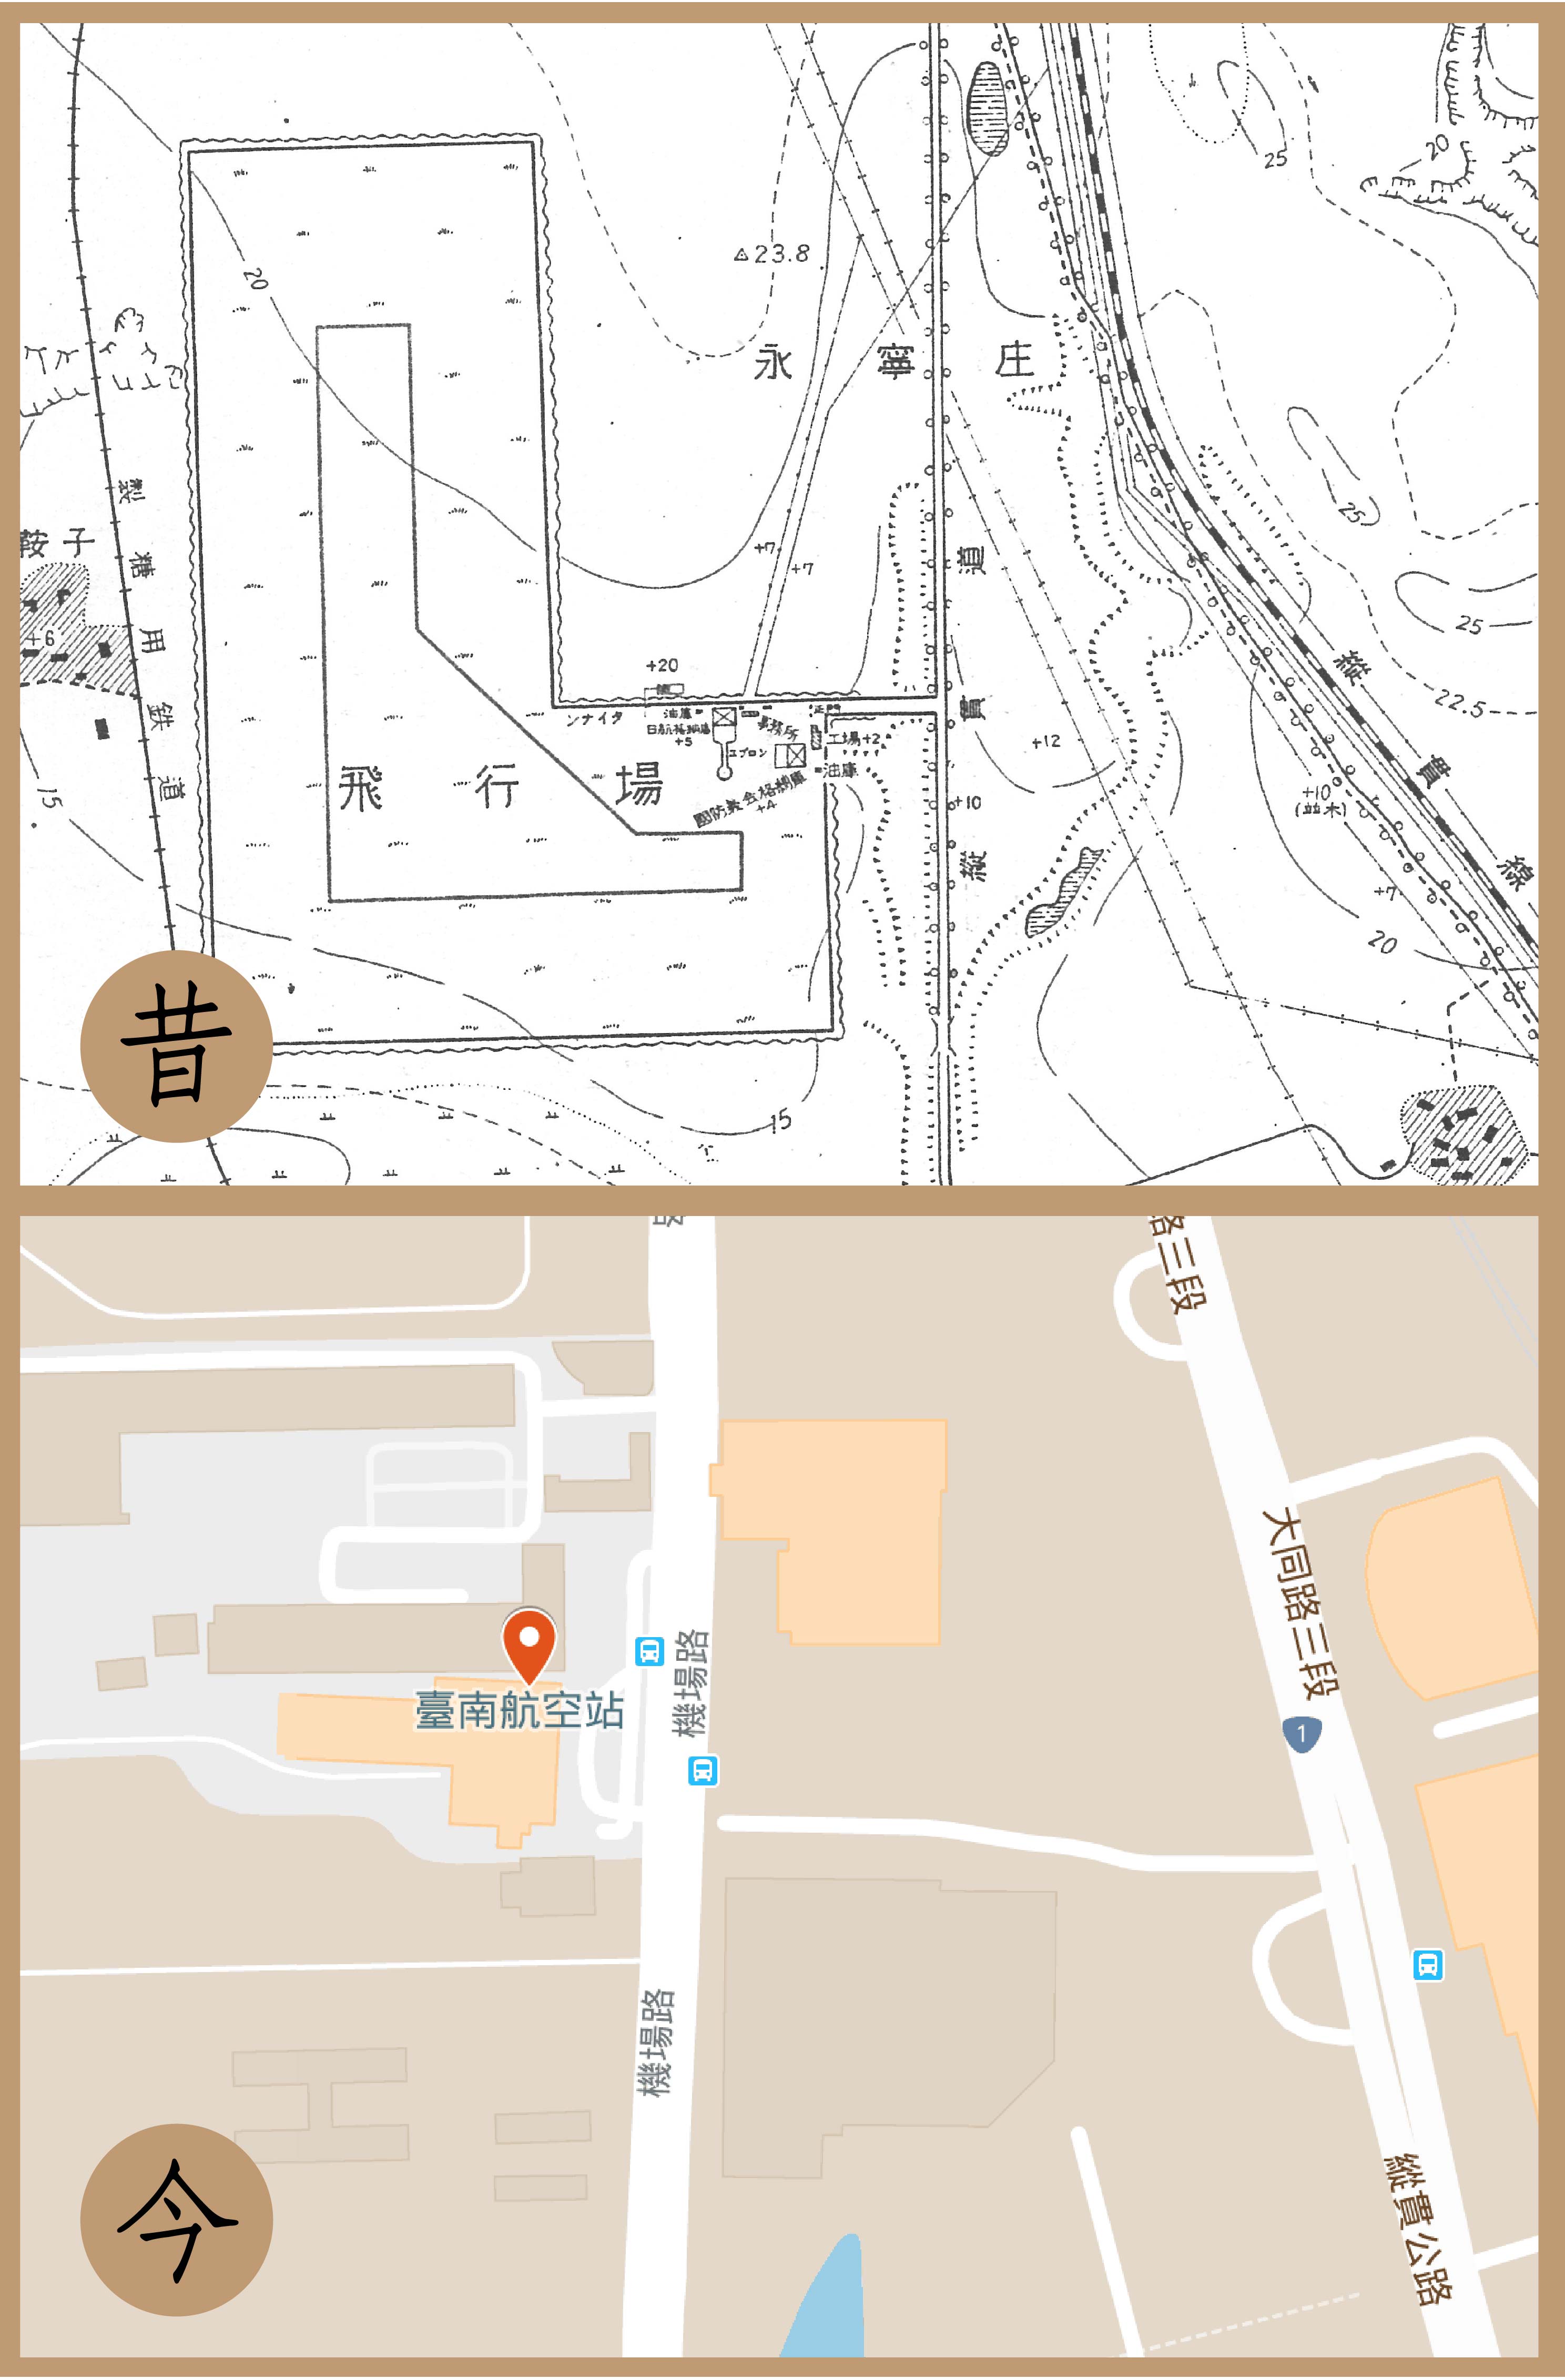 1940 年臺南飛行場平面圖，與當今臺南航空站的地圖對照。圖片來源│日本防衛省防衛研究所戰史研究中心、Google Map